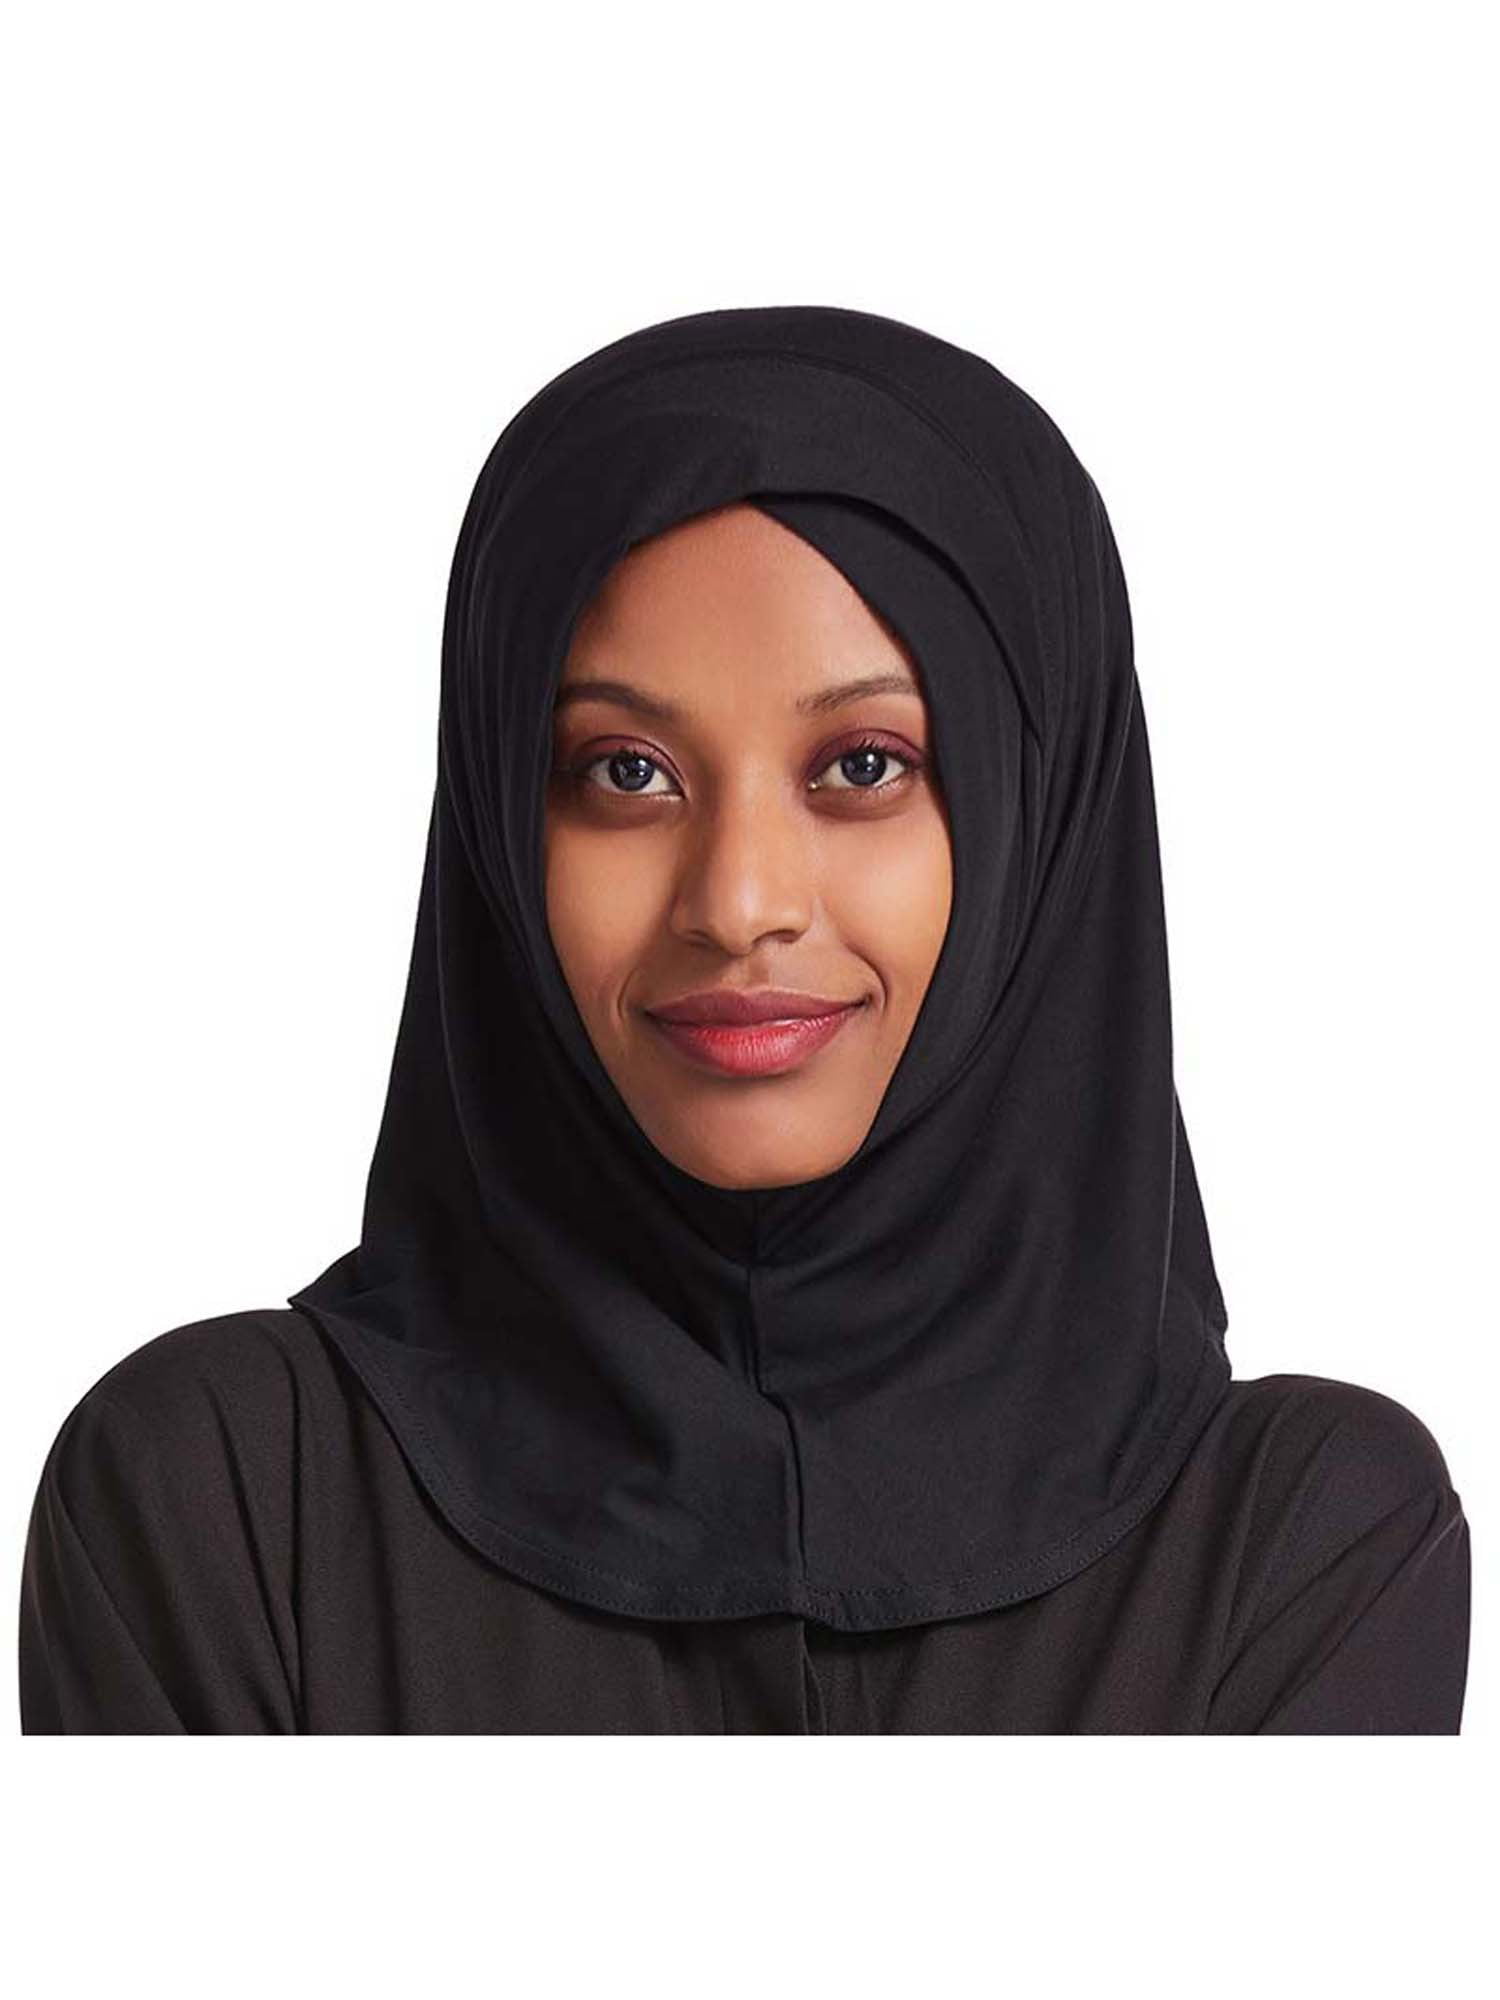 Women's Rhinestones Scarf Muslim Hijab Islamic Head Cover Cap Arab Shawls Shayla 